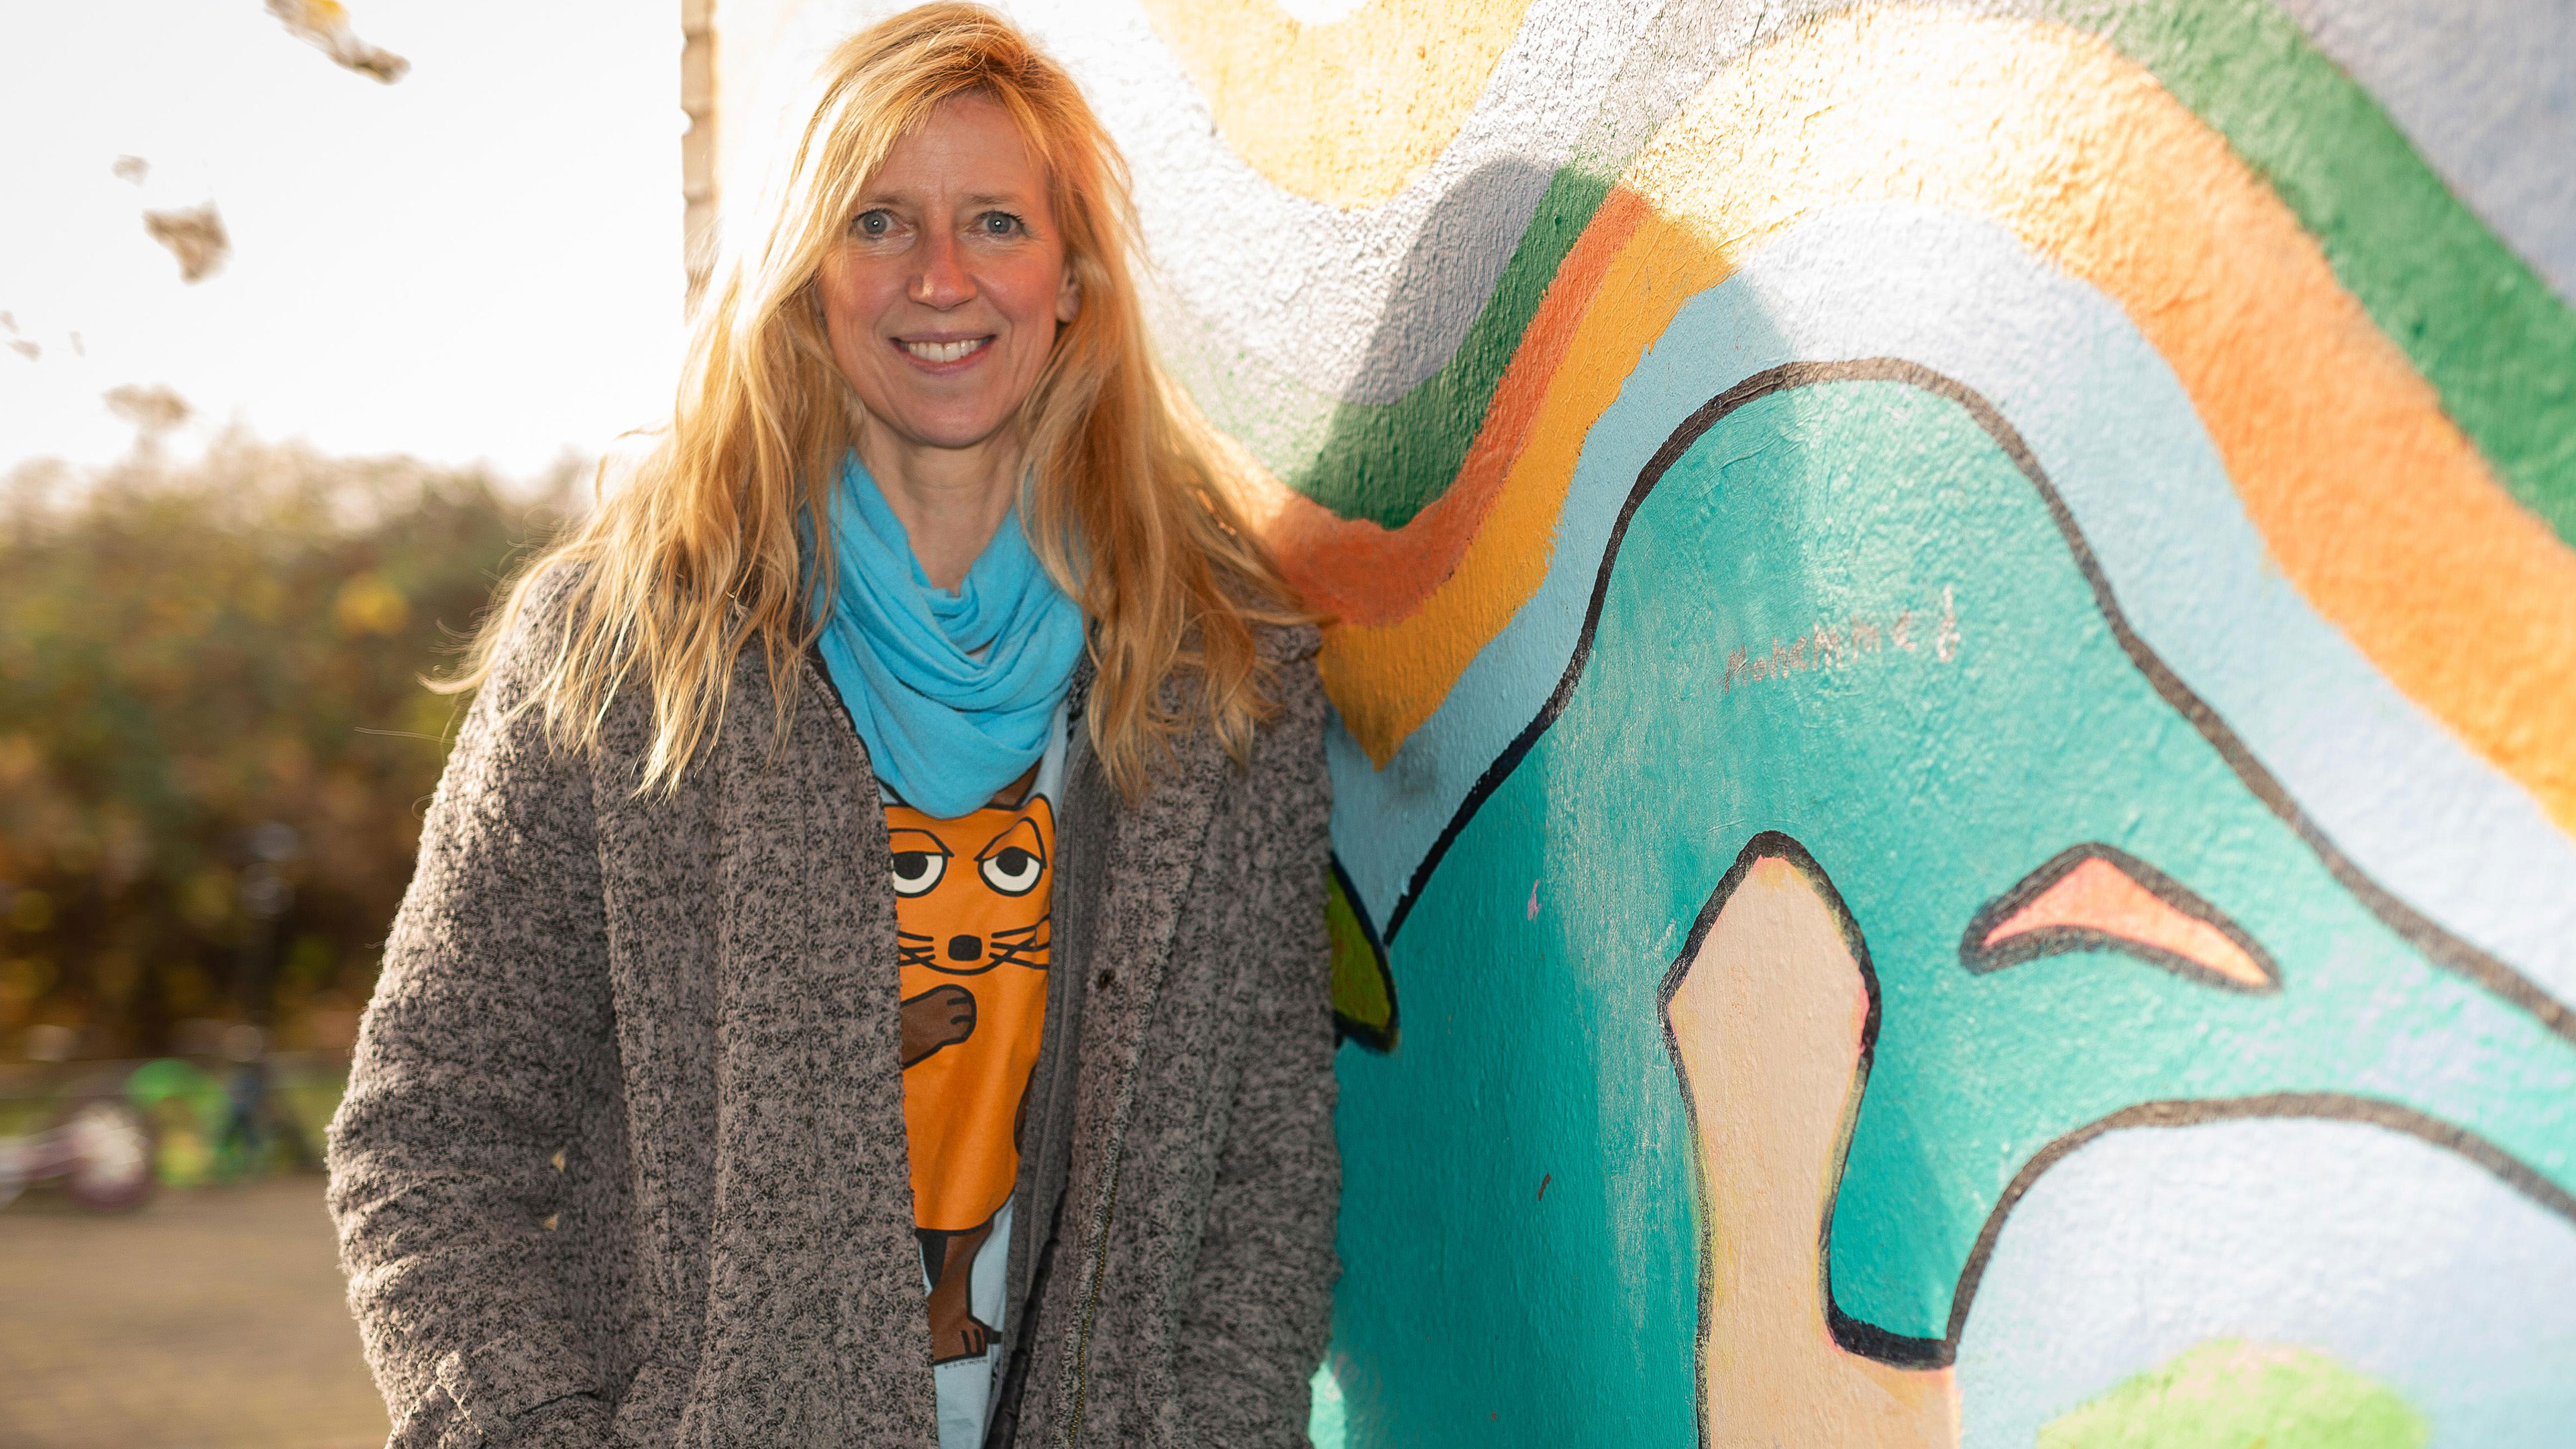 Eine Frau mit langen blonden Haaren, die unter ihrem Mantel ein T-Shirt mit der Maus darauf trägt, lehnt sich an eine mit buntem Graffiti bemalte Hauswand.